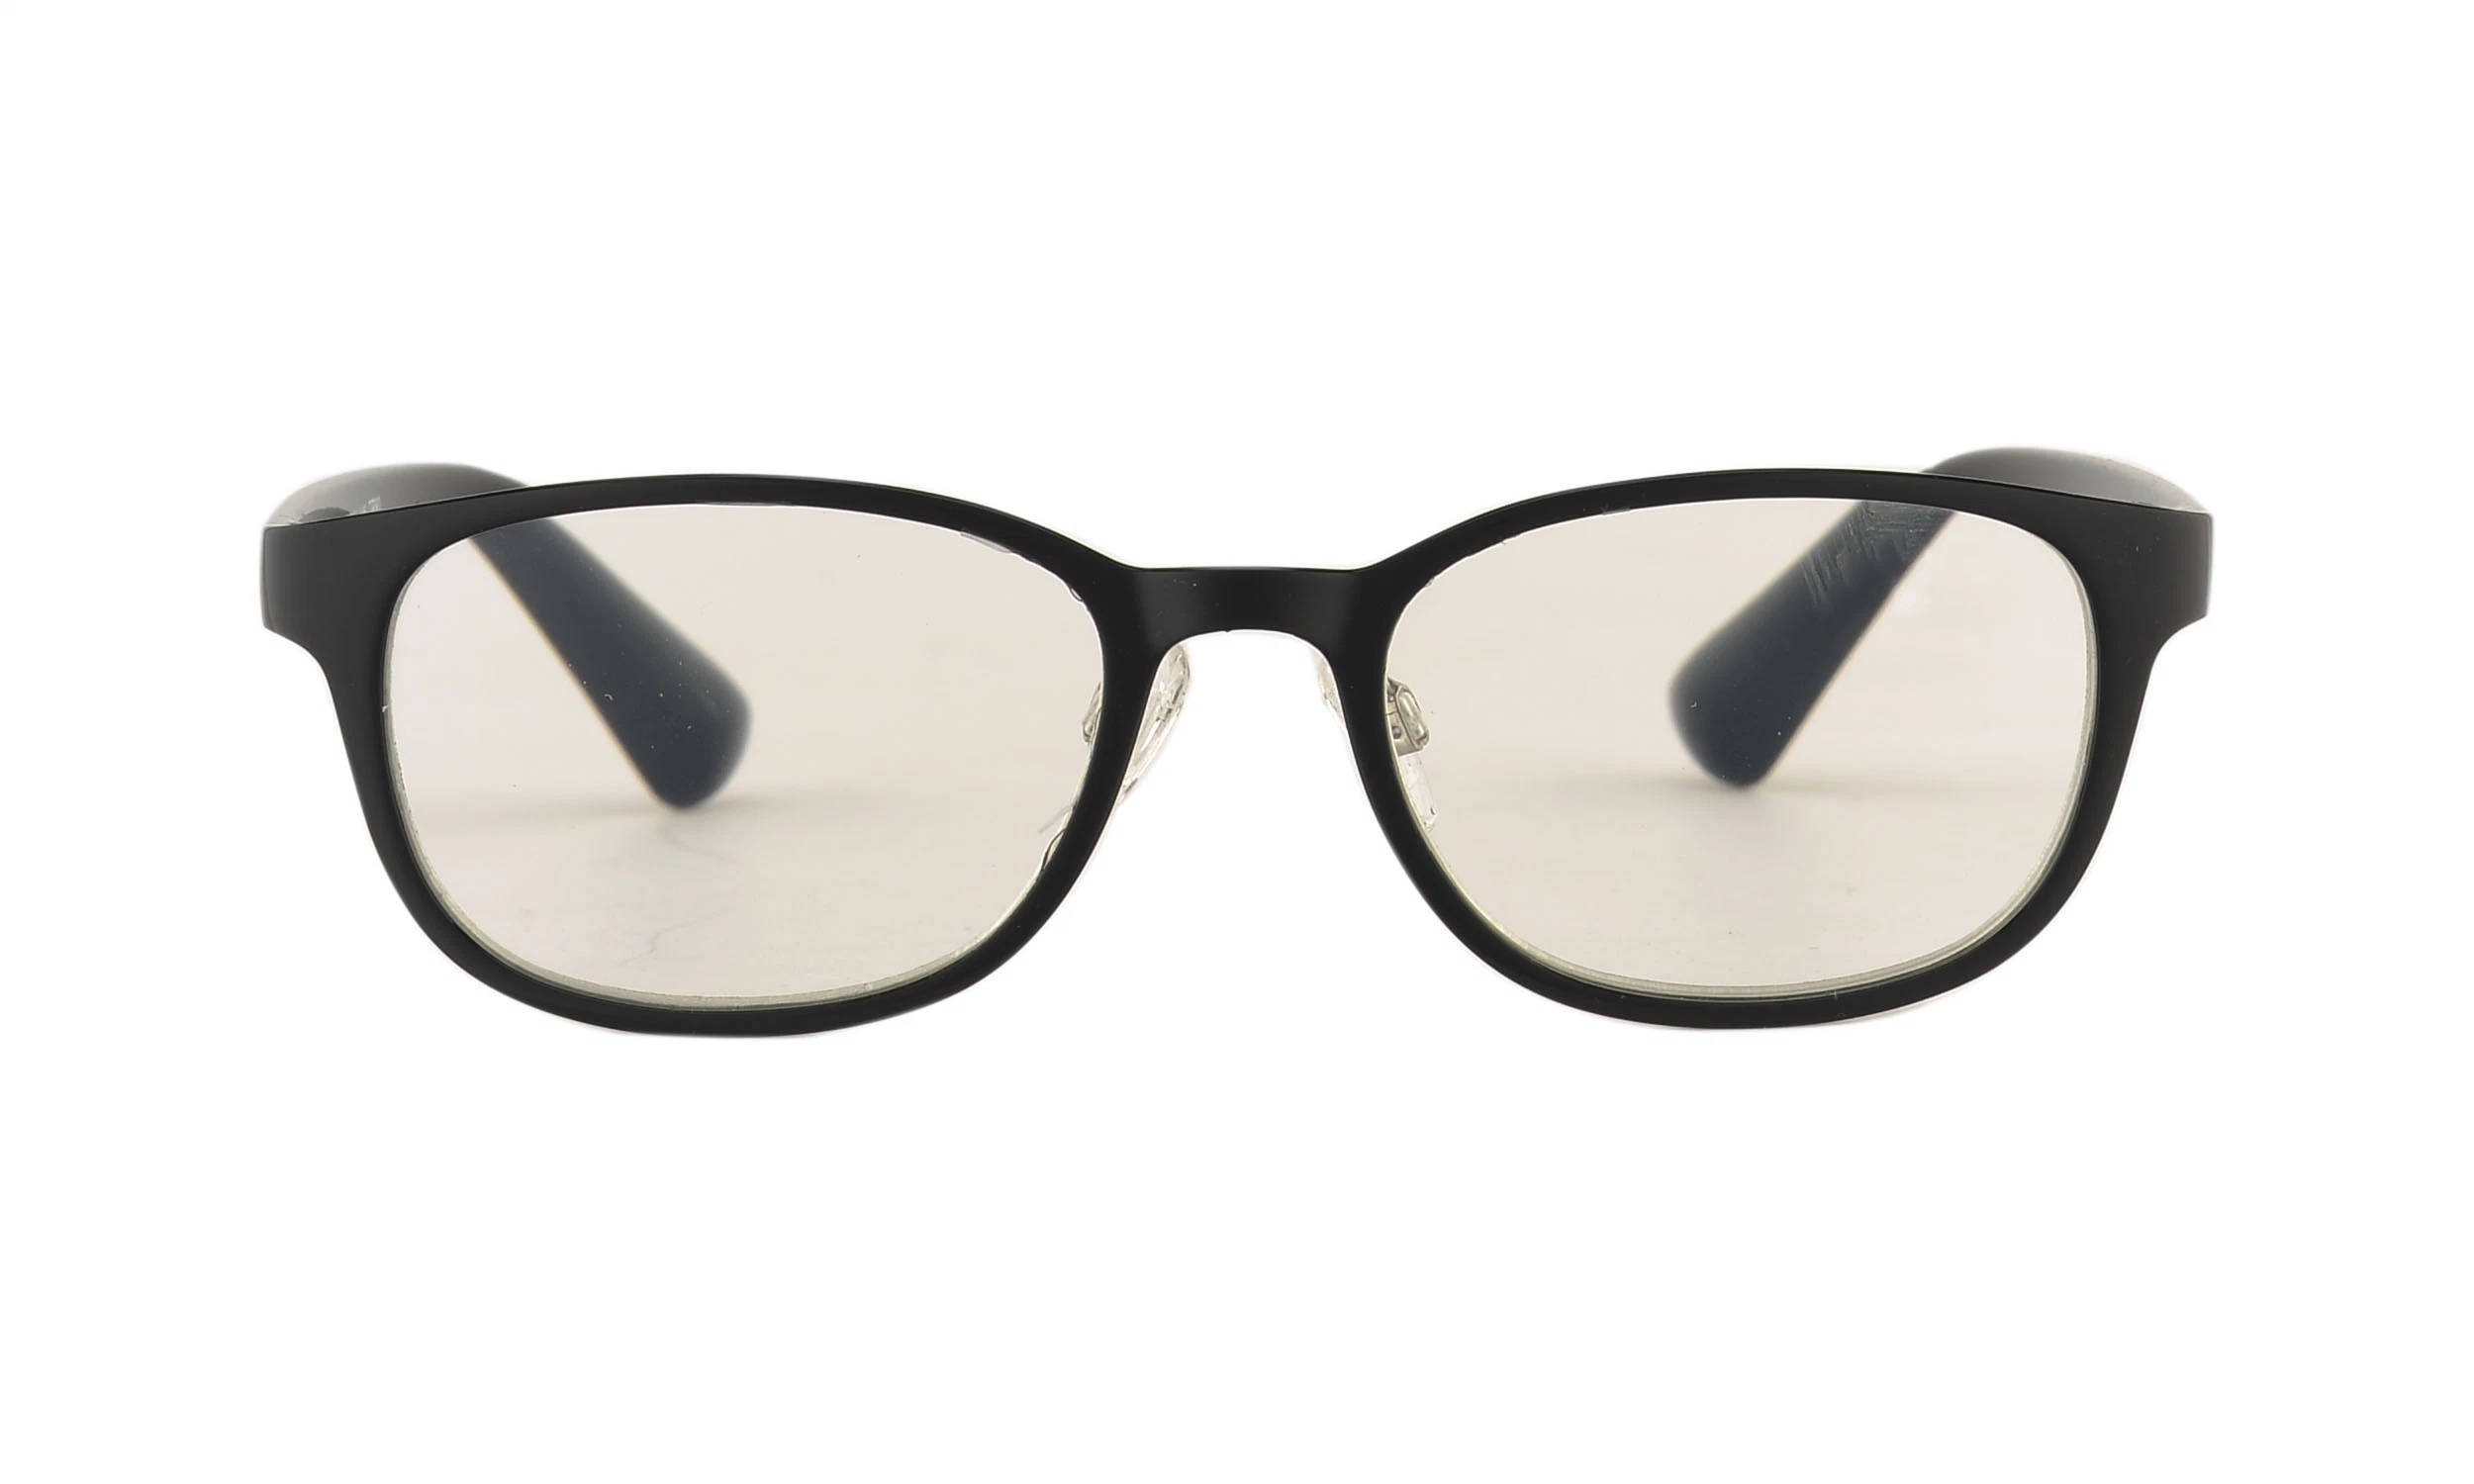 Marco de plástico simple moda gafas de lectura